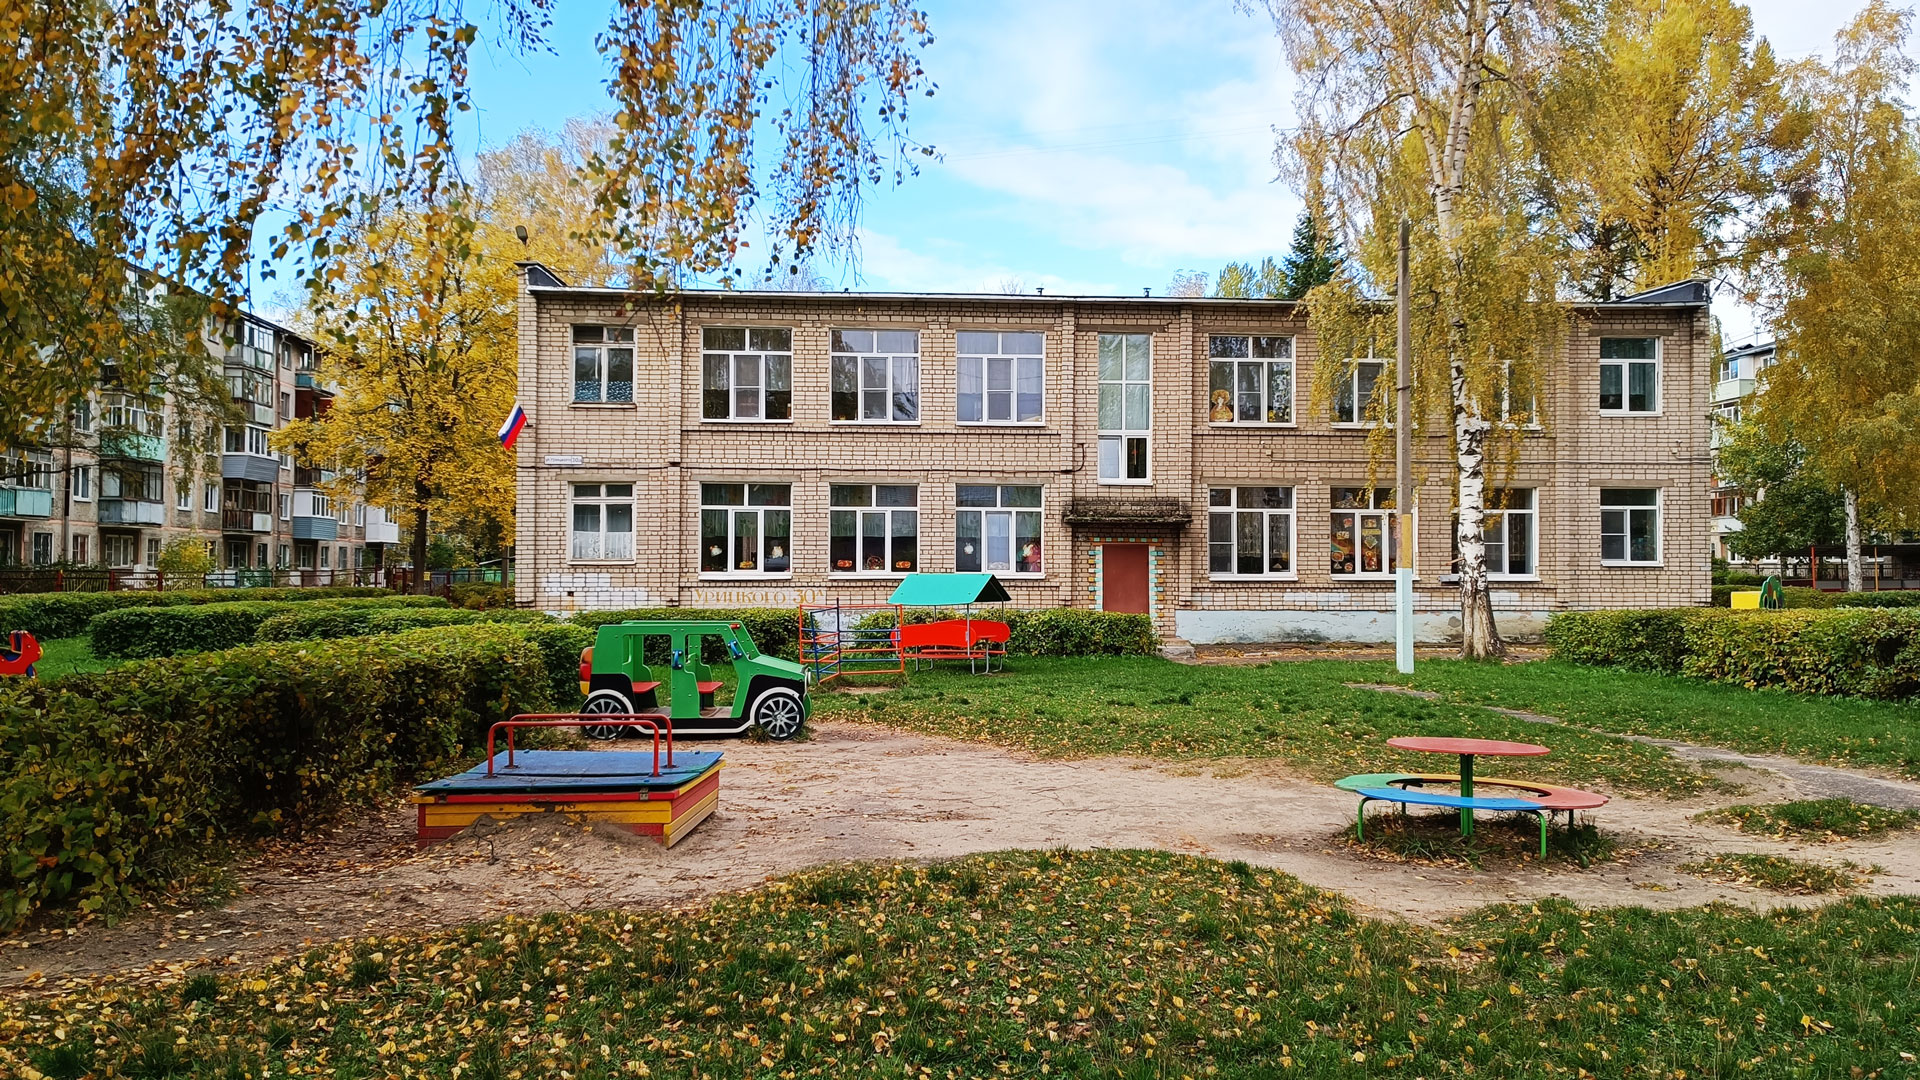 Детский сад 16 Ярославль: общий вид здания и двора.